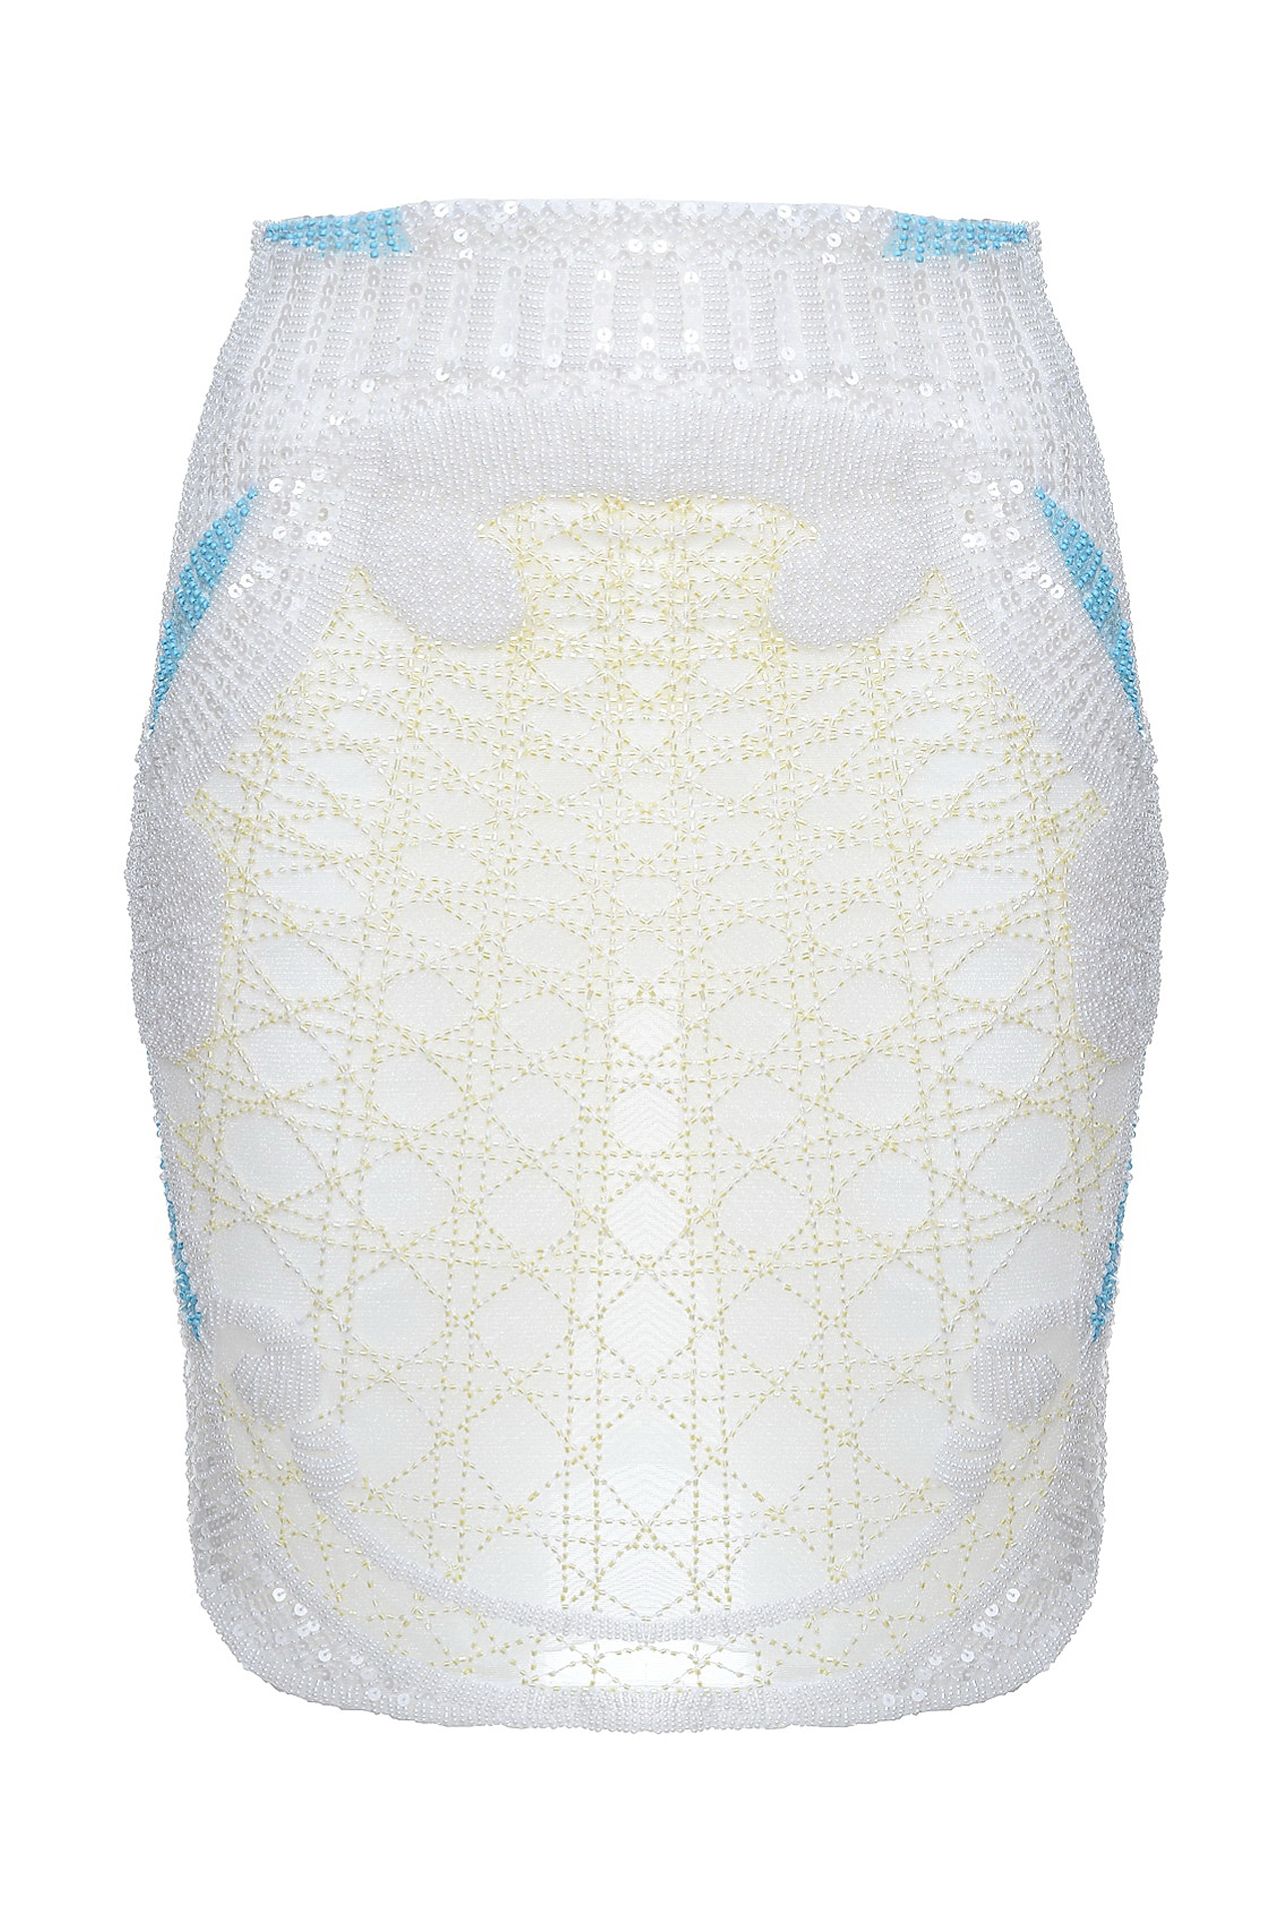 Одежда женская Юбка POP COLLECTION (7083/14.1). Купить за 12250 руб.